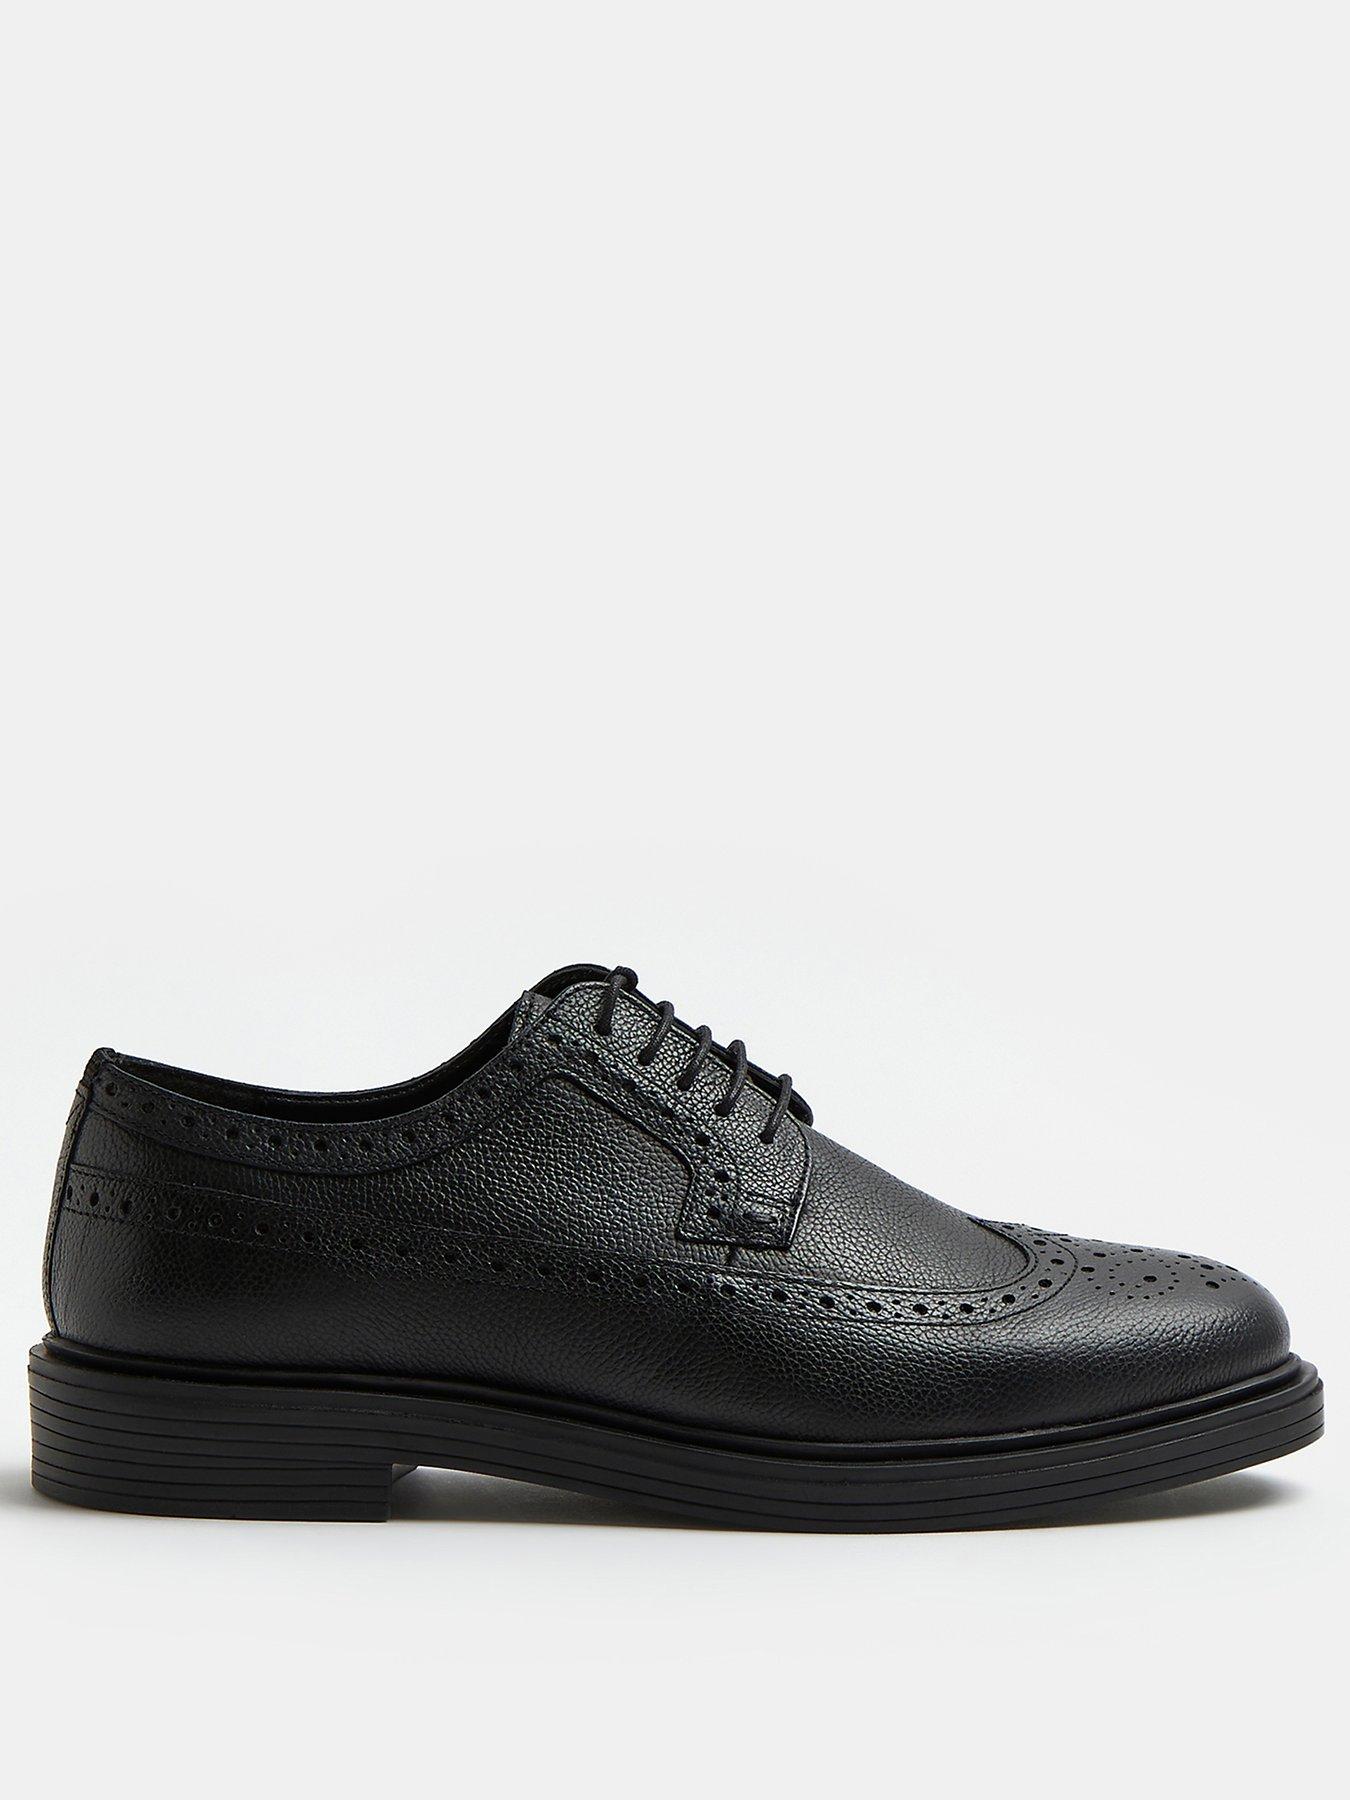 Men Leather Lace Up Brogue Shoes - Black